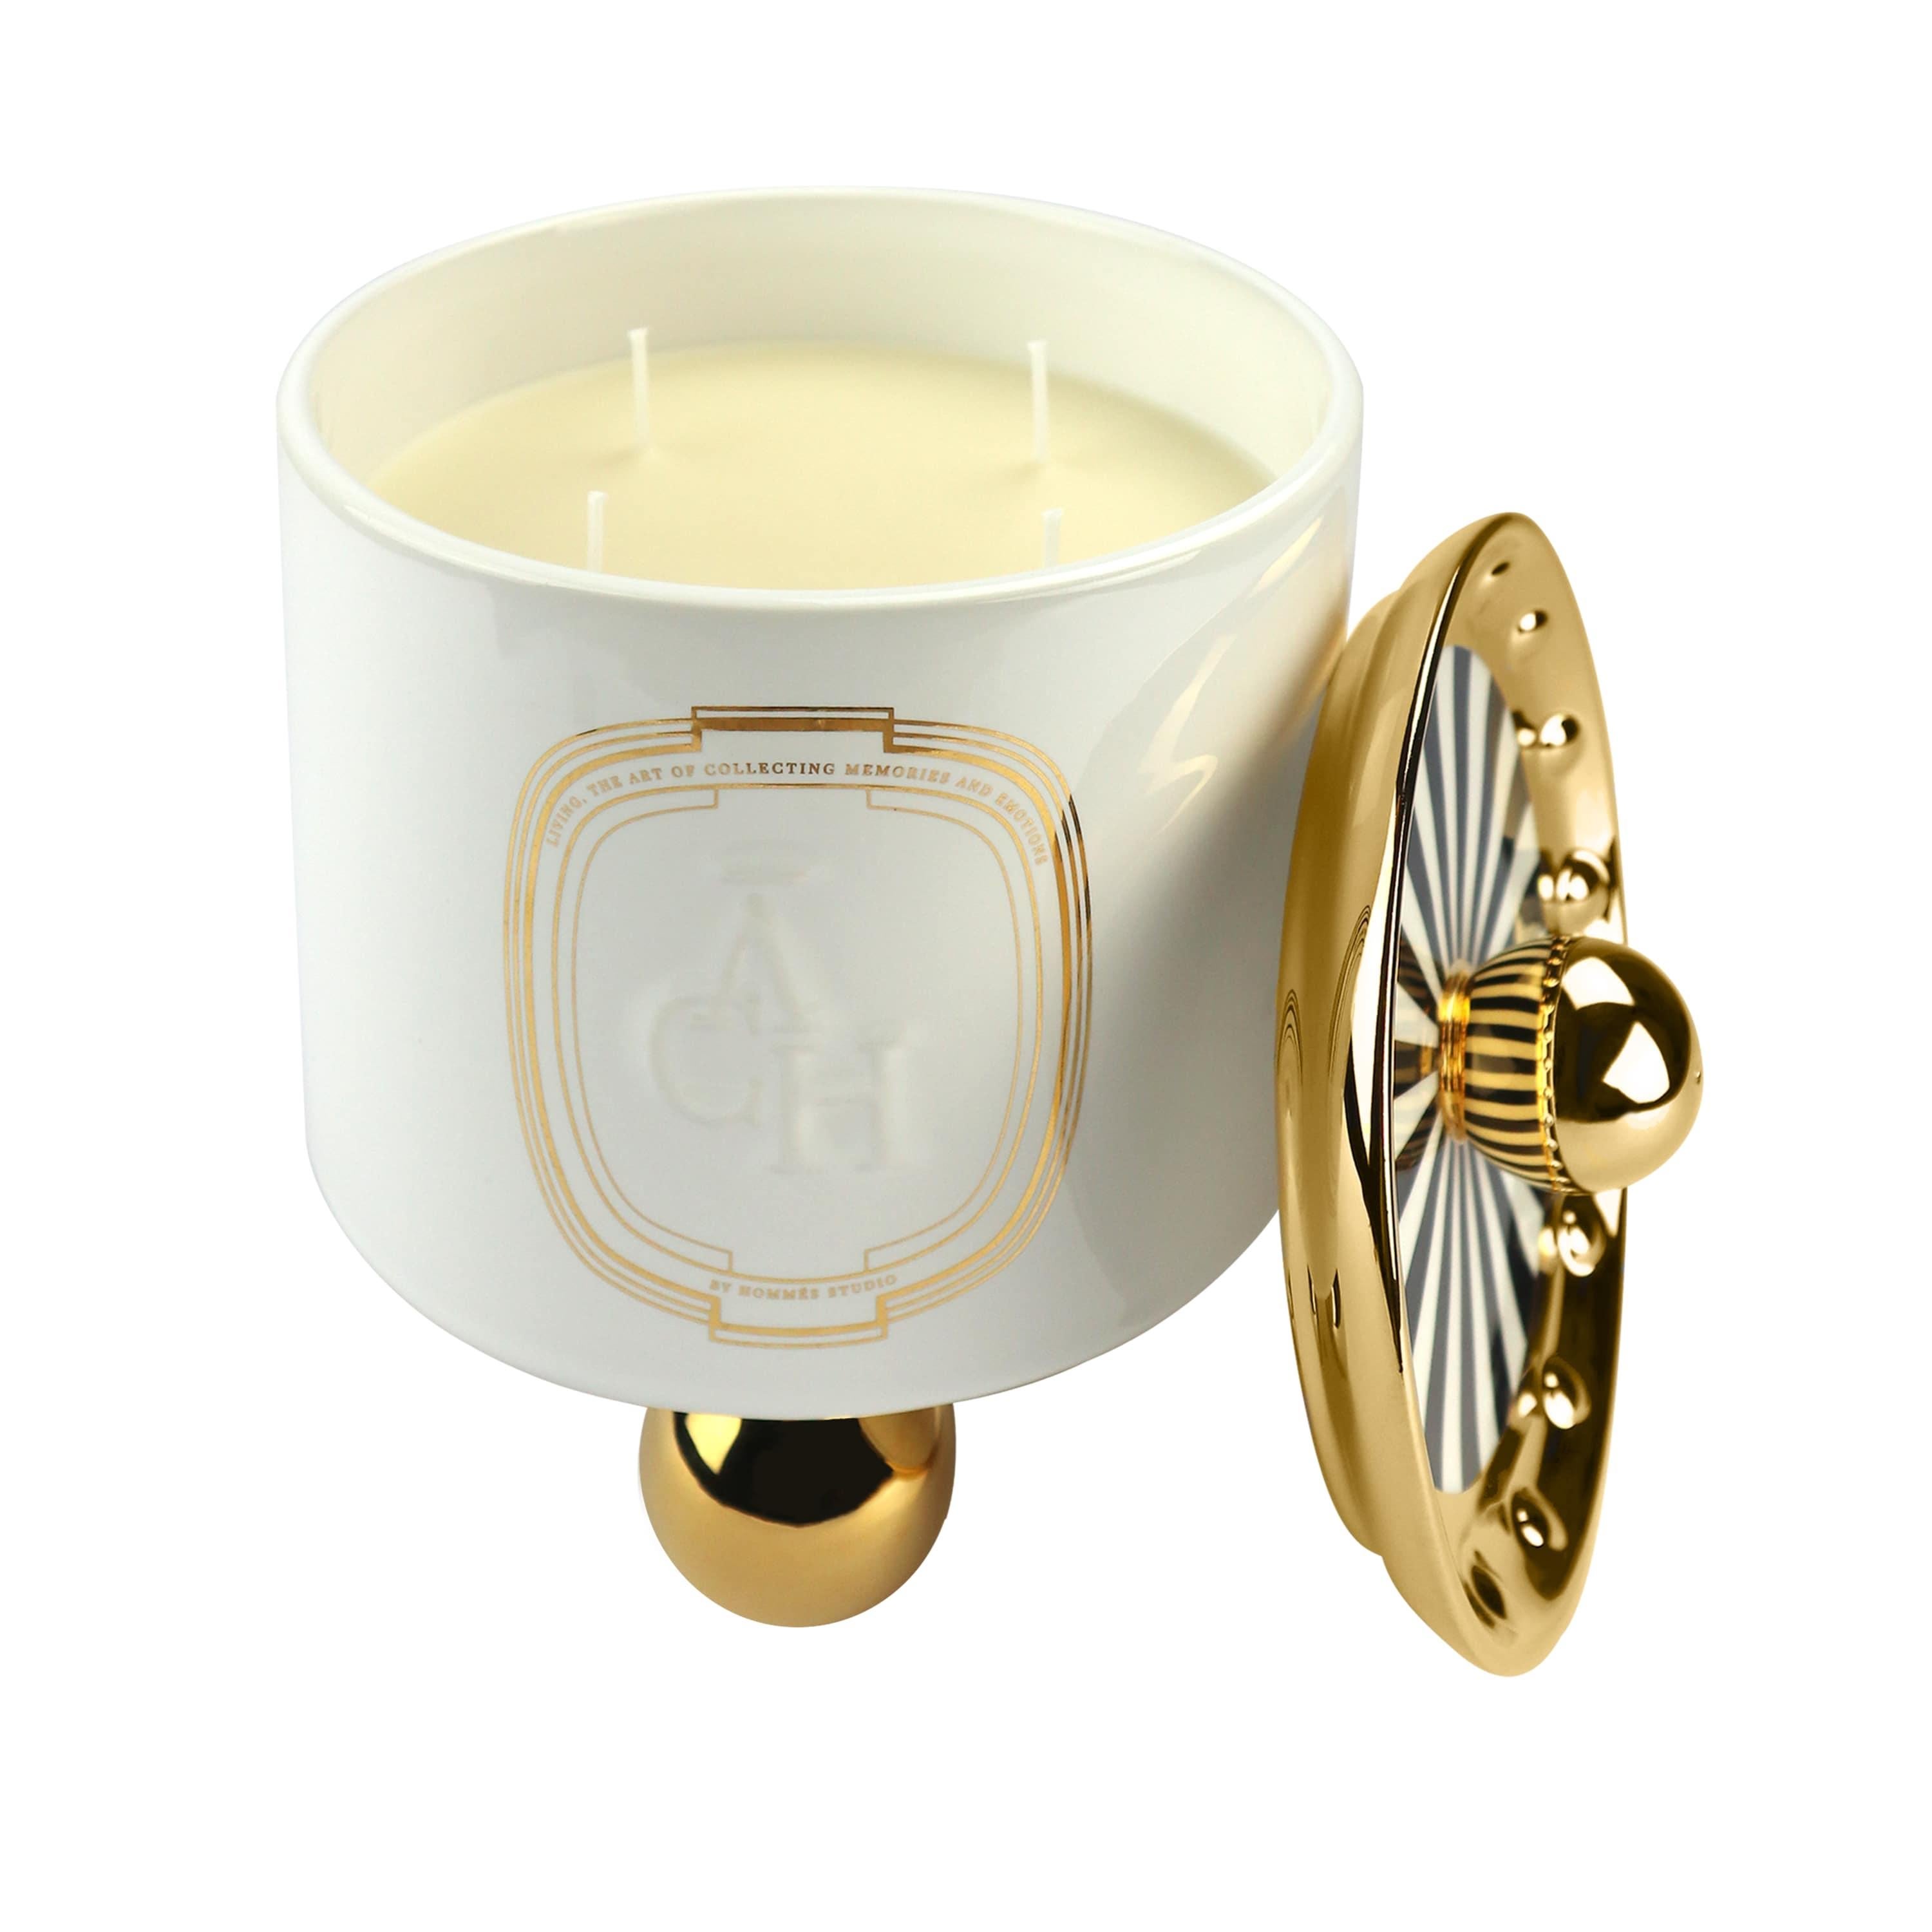 Kerze Bois Oud duftend, Weißer Keramik-Kerzenhalter Natürlicher Duft, Vorrätig

Dank ihres auffälligen Behälterdesigns verströmt die Kerze Achi einen hypnotischen Duft und wertet den Raum auf. Die natürliche Komposition der Düfte verspricht